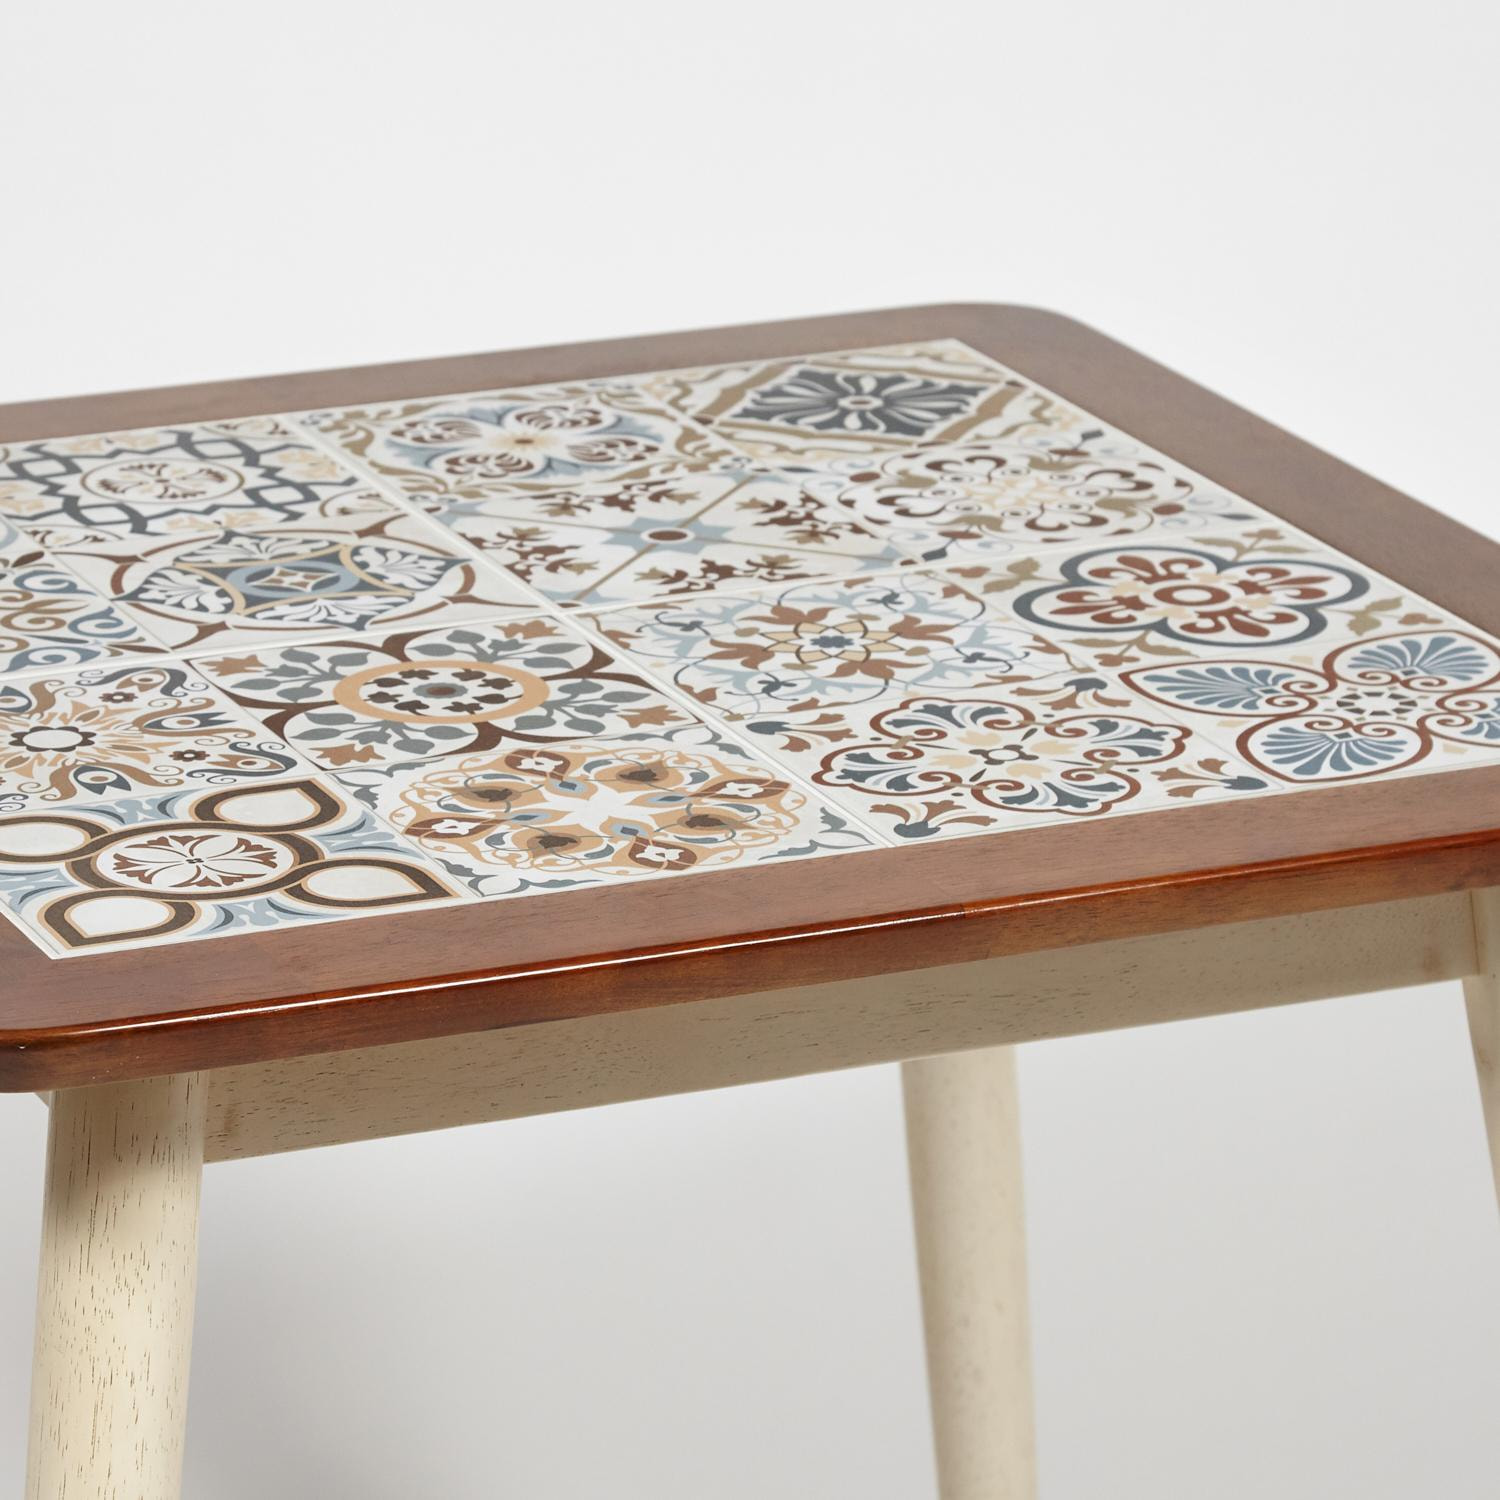 CT3030 Marrakesh стол с плиткой дерево гевея/плитка, 73,5*73,5*75см, темный дуб/античный белый , рисунок - марокко